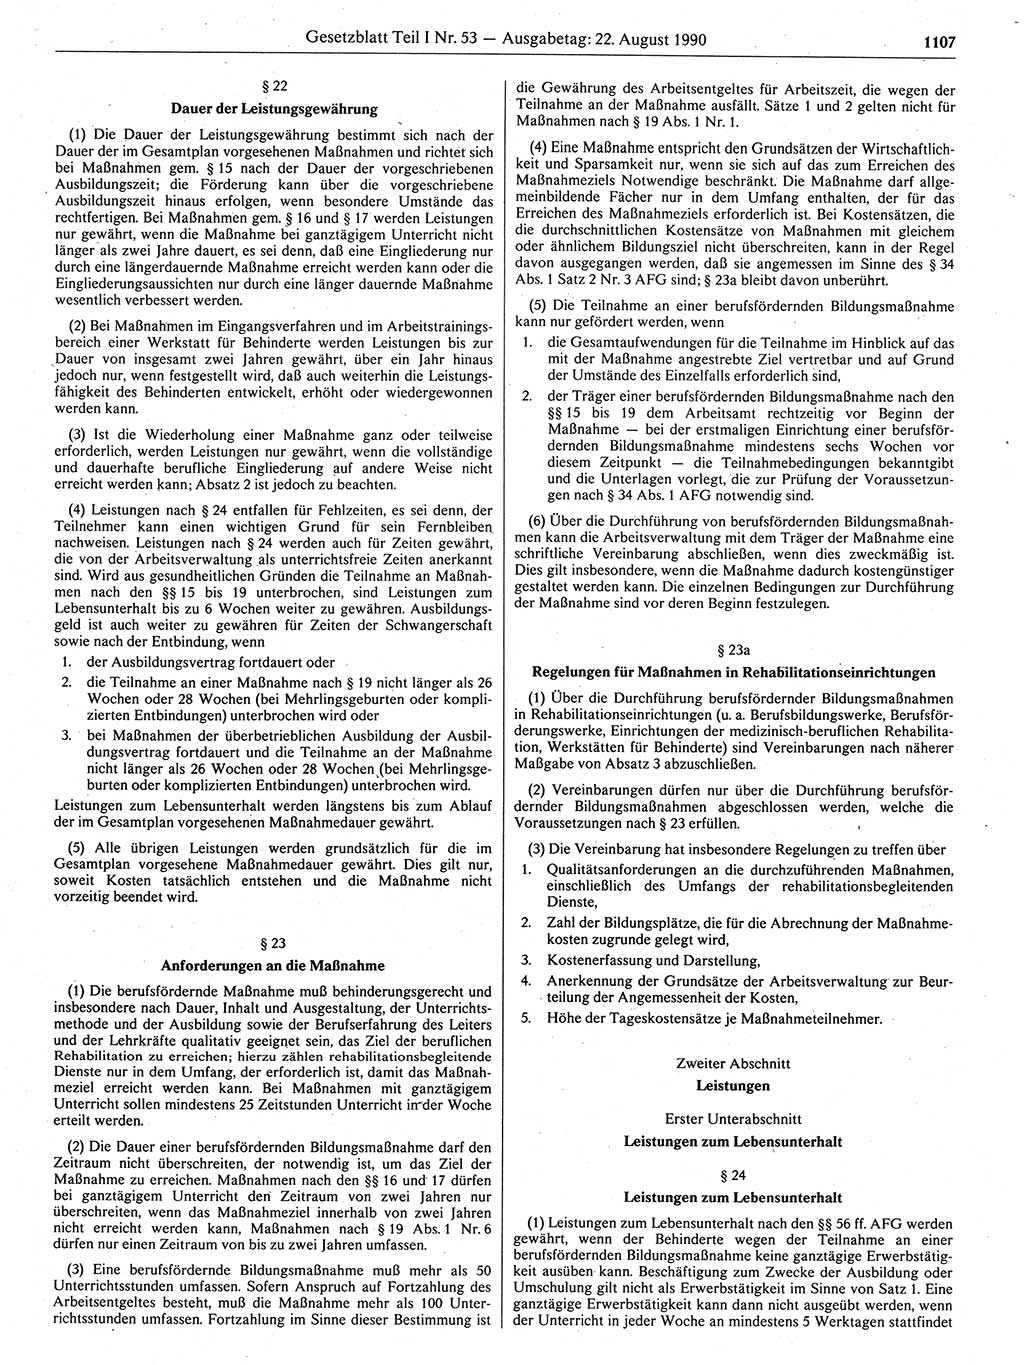 Gesetzblatt (GBl.) der Deutschen Demokratischen Republik (DDR) Teil Ⅰ 1990, Seite 1107 (GBl. DDR Ⅰ 1990, S. 1107)